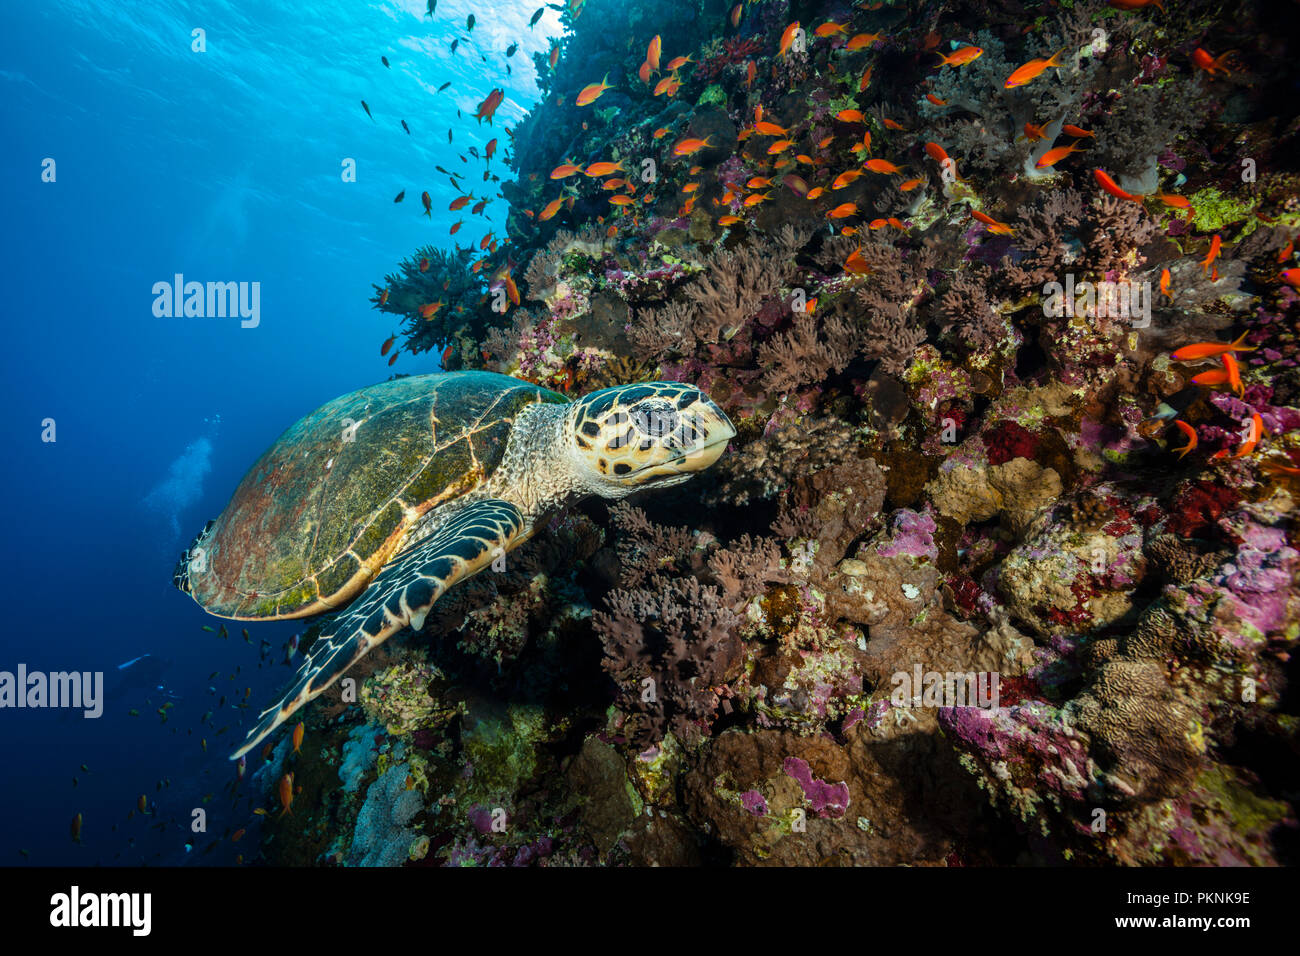 La tortue imbriquée, Eretmochelys imbricata, Red Sea, Egypt Banque D'Images